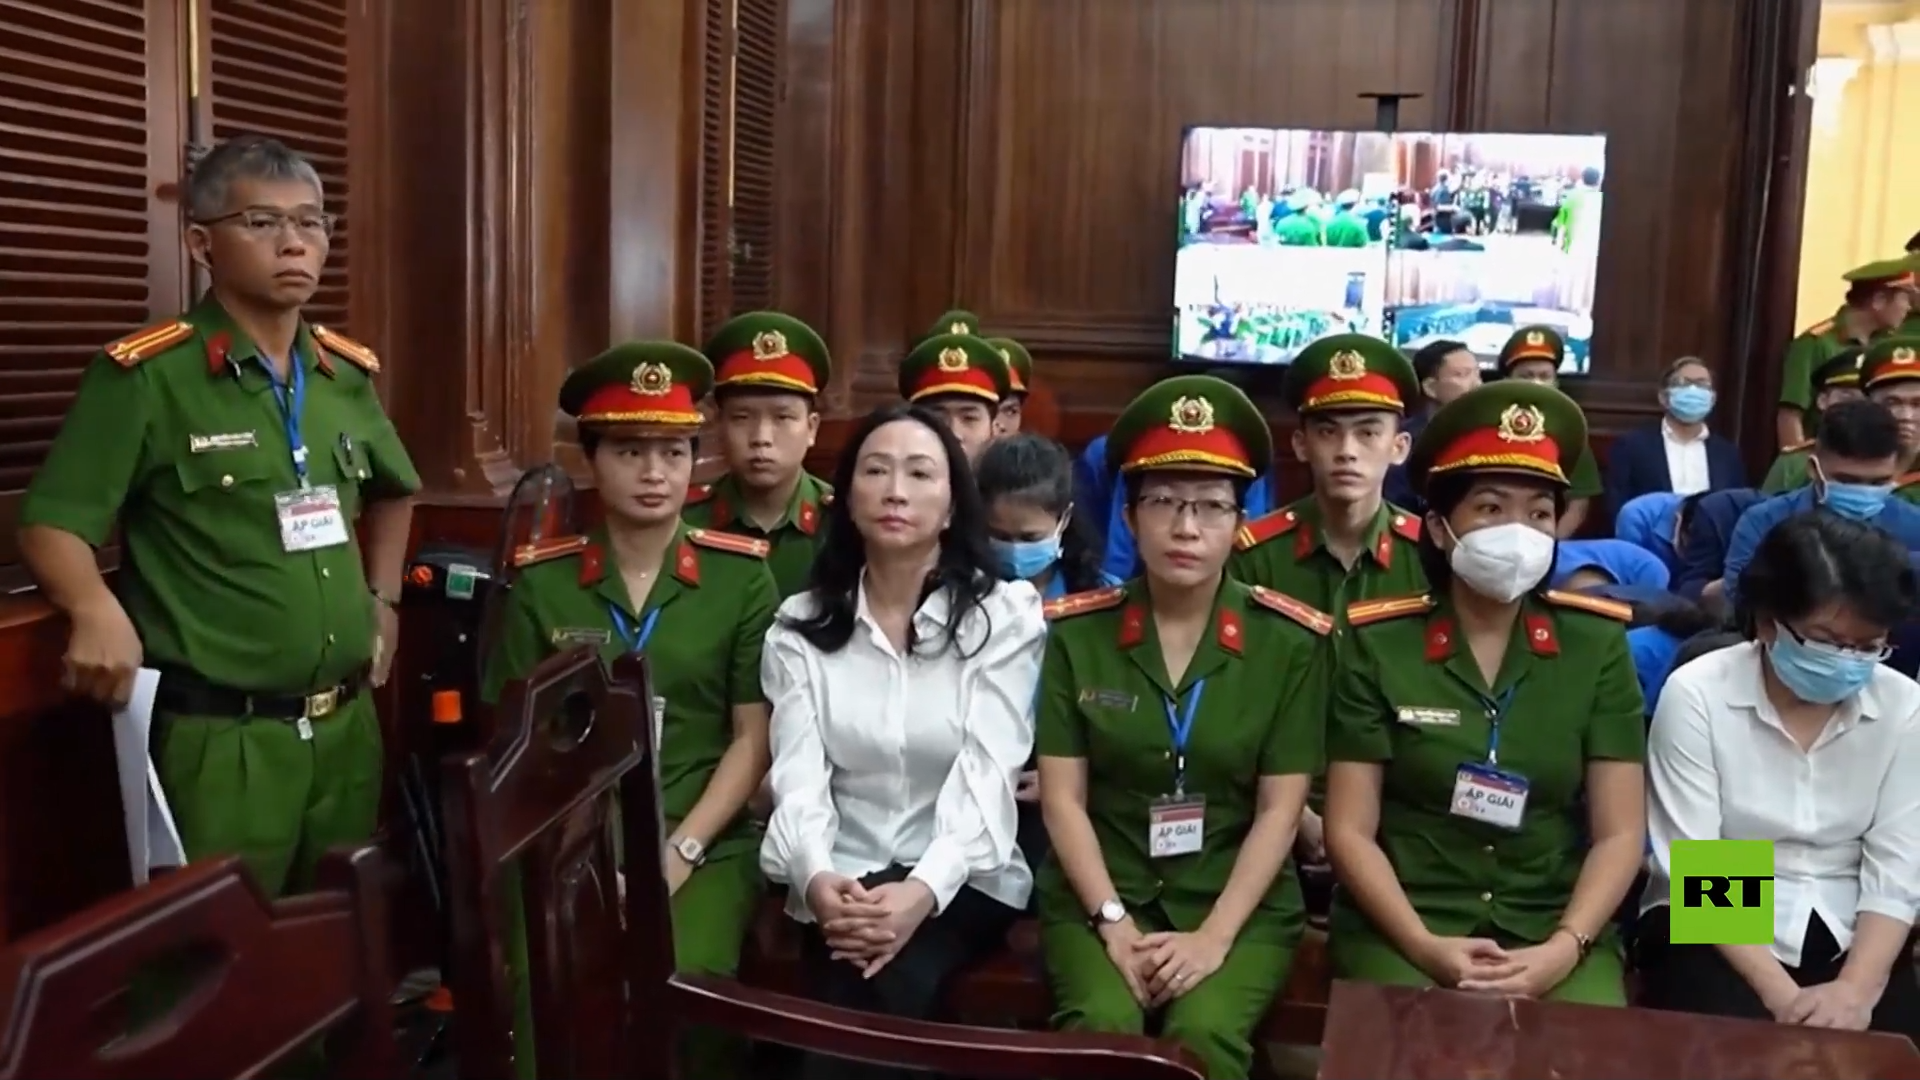 الحكم بالإعدام على مليارديرة في فيتنام في أكبر قضية احتيال مالي في تاريخ البلاد